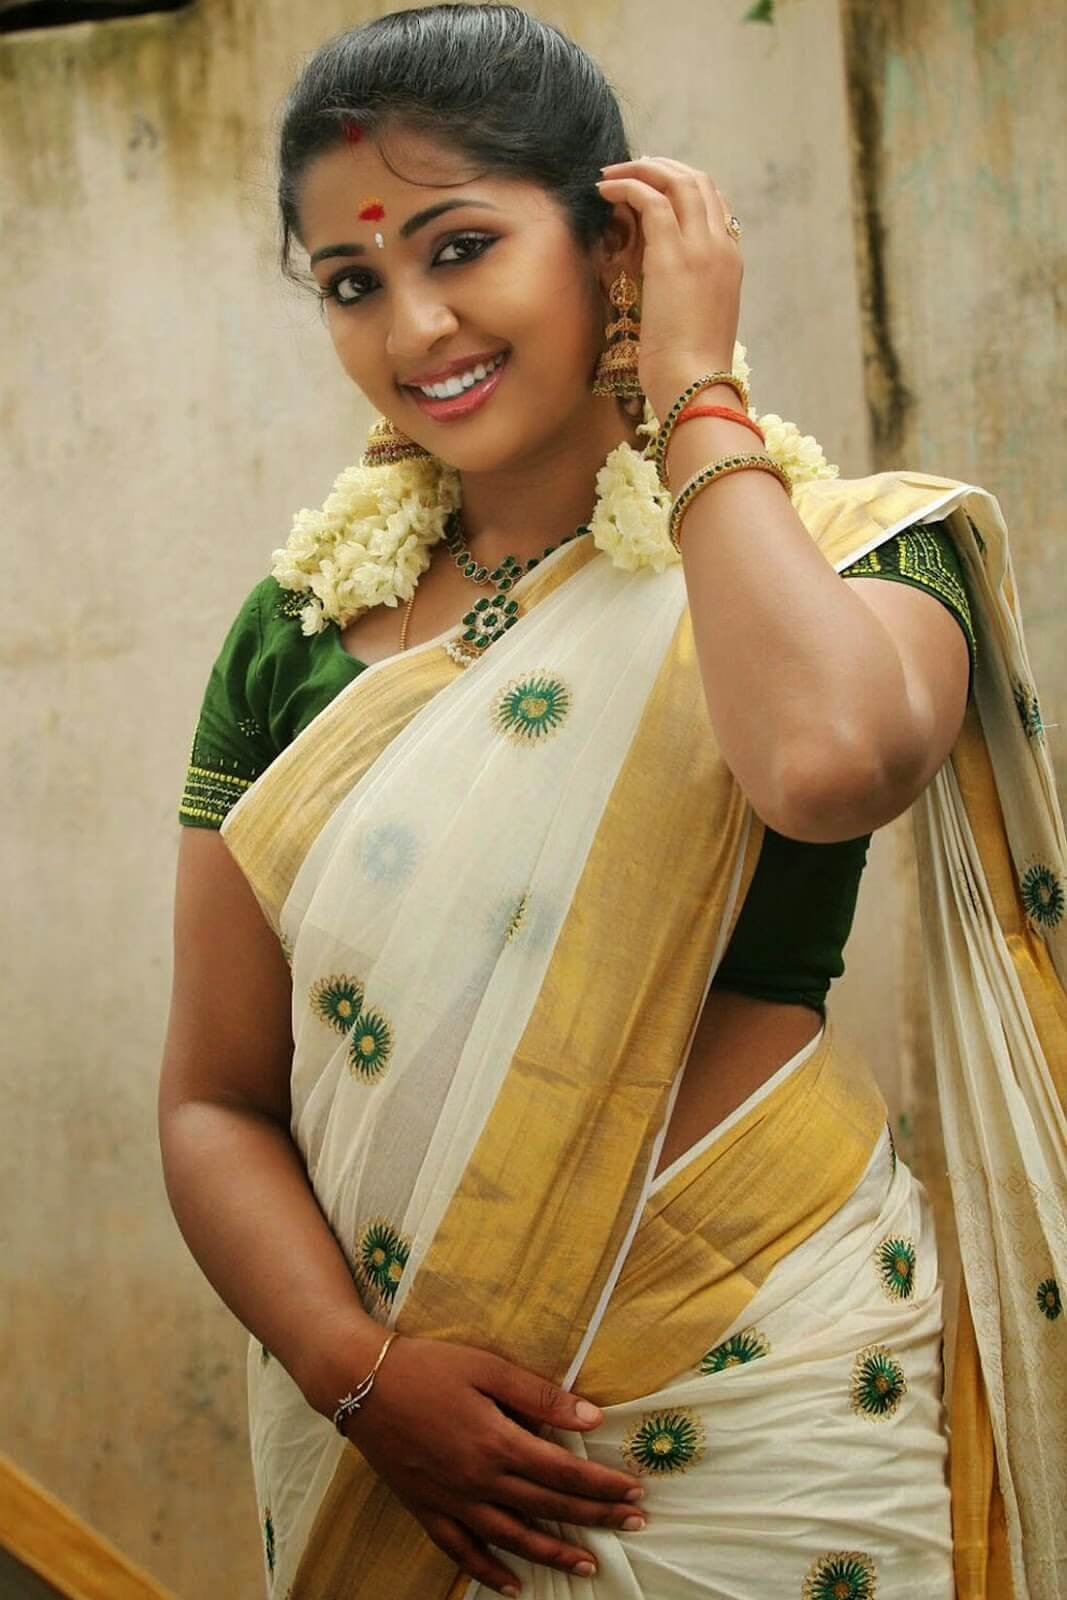 Indian Movie Actress: Mallu movie actress Navya Nair hot 